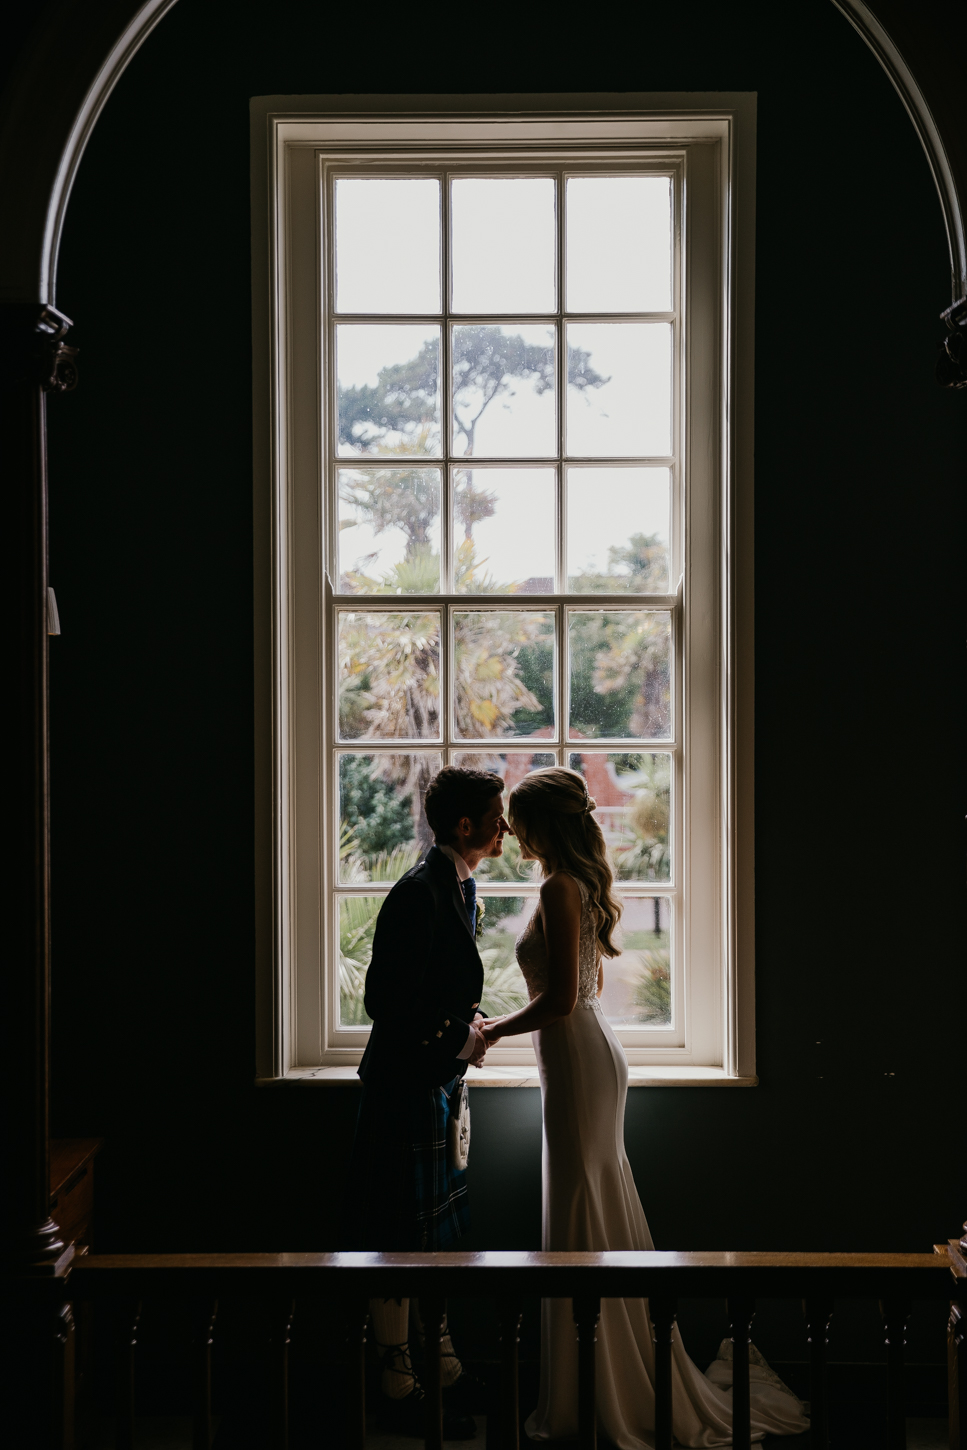 Portmarnock Hotel Wedding | Real wedding photos by Darren Byrne